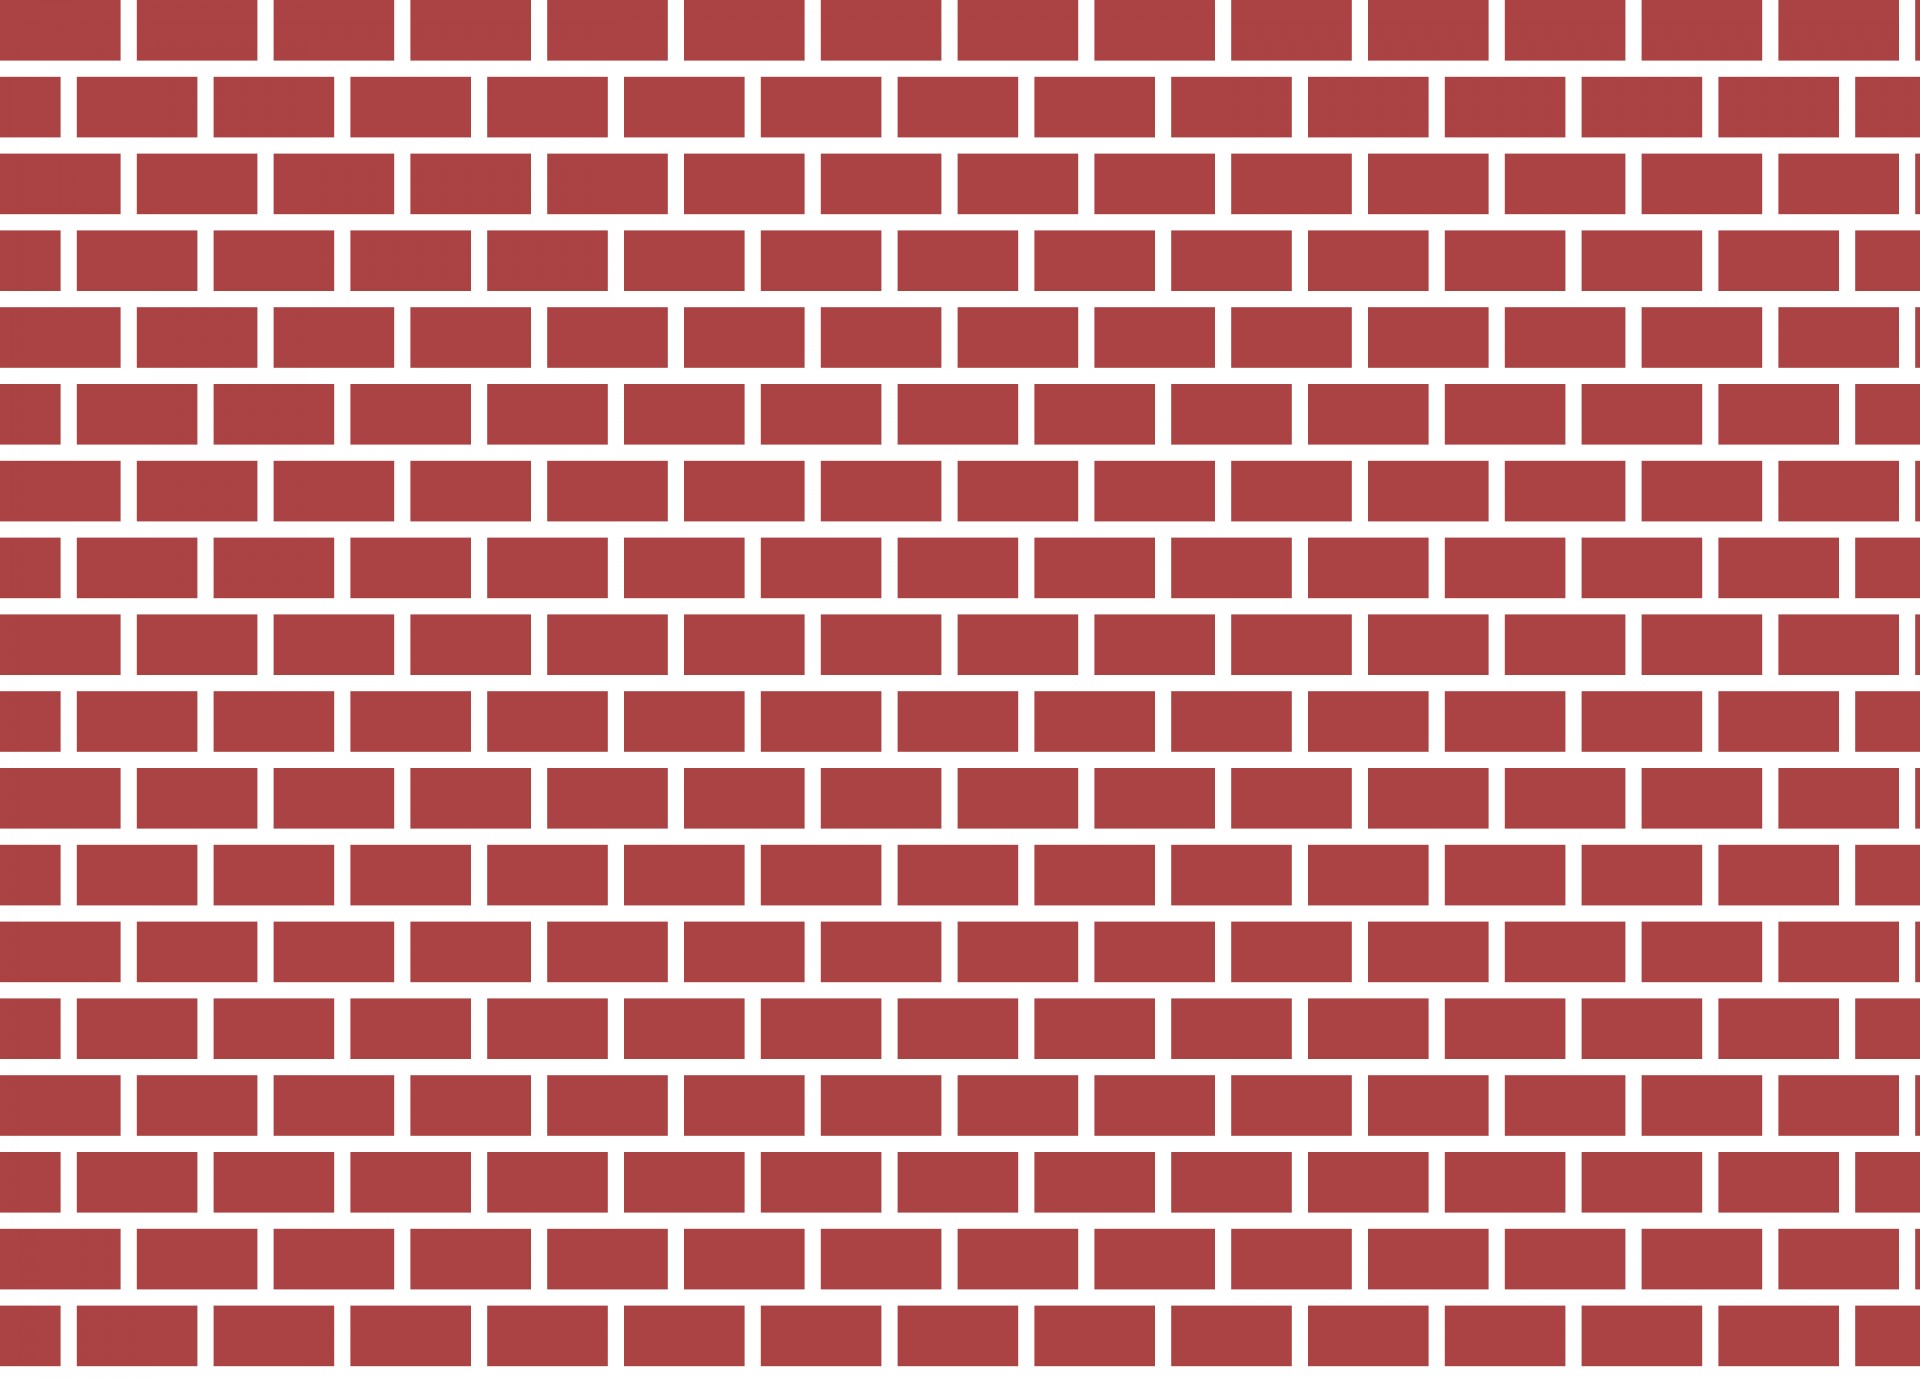 Bricks - Illustration of a st